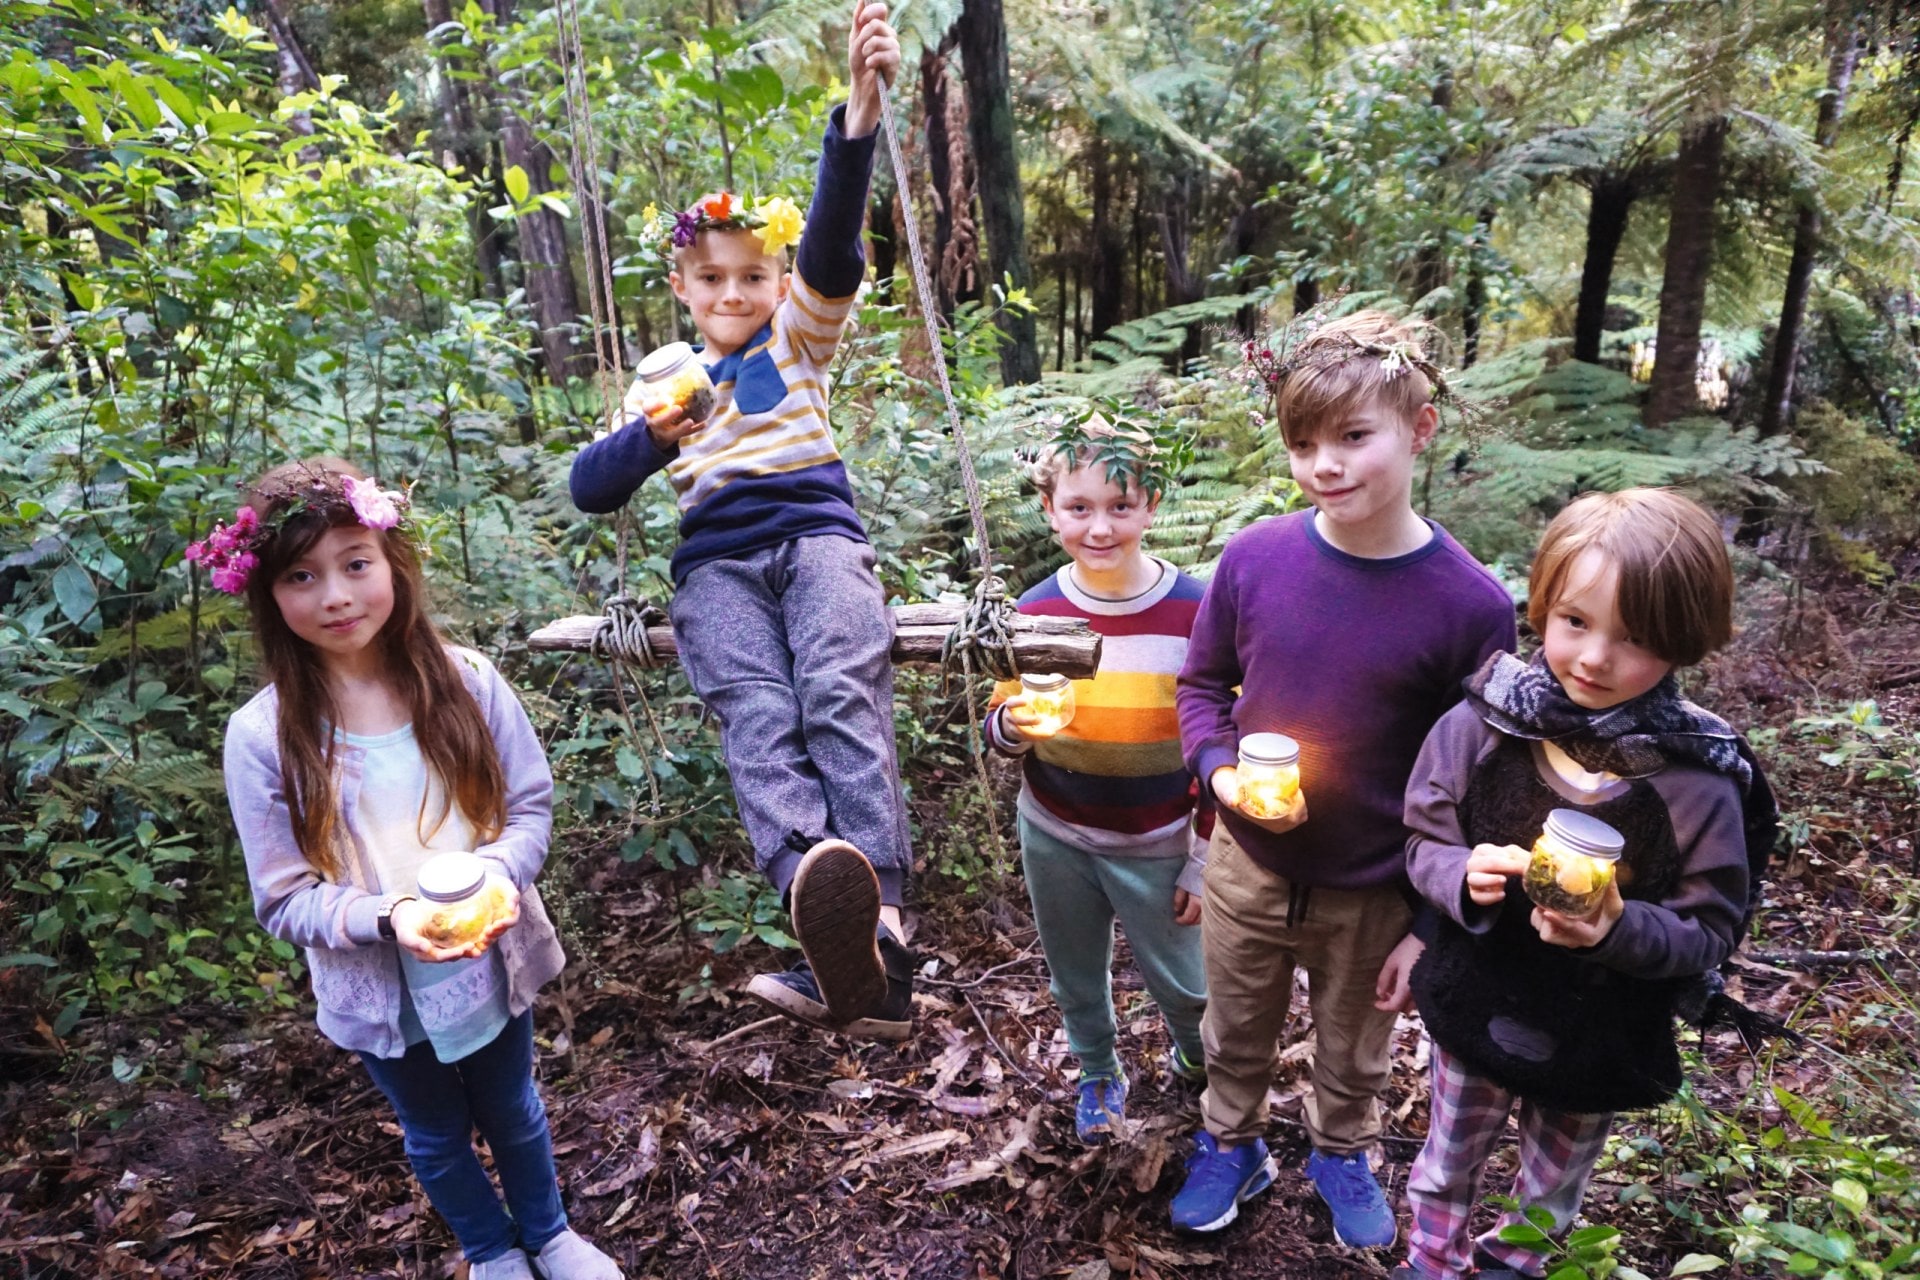 Children in forest holding fairy lanterns 